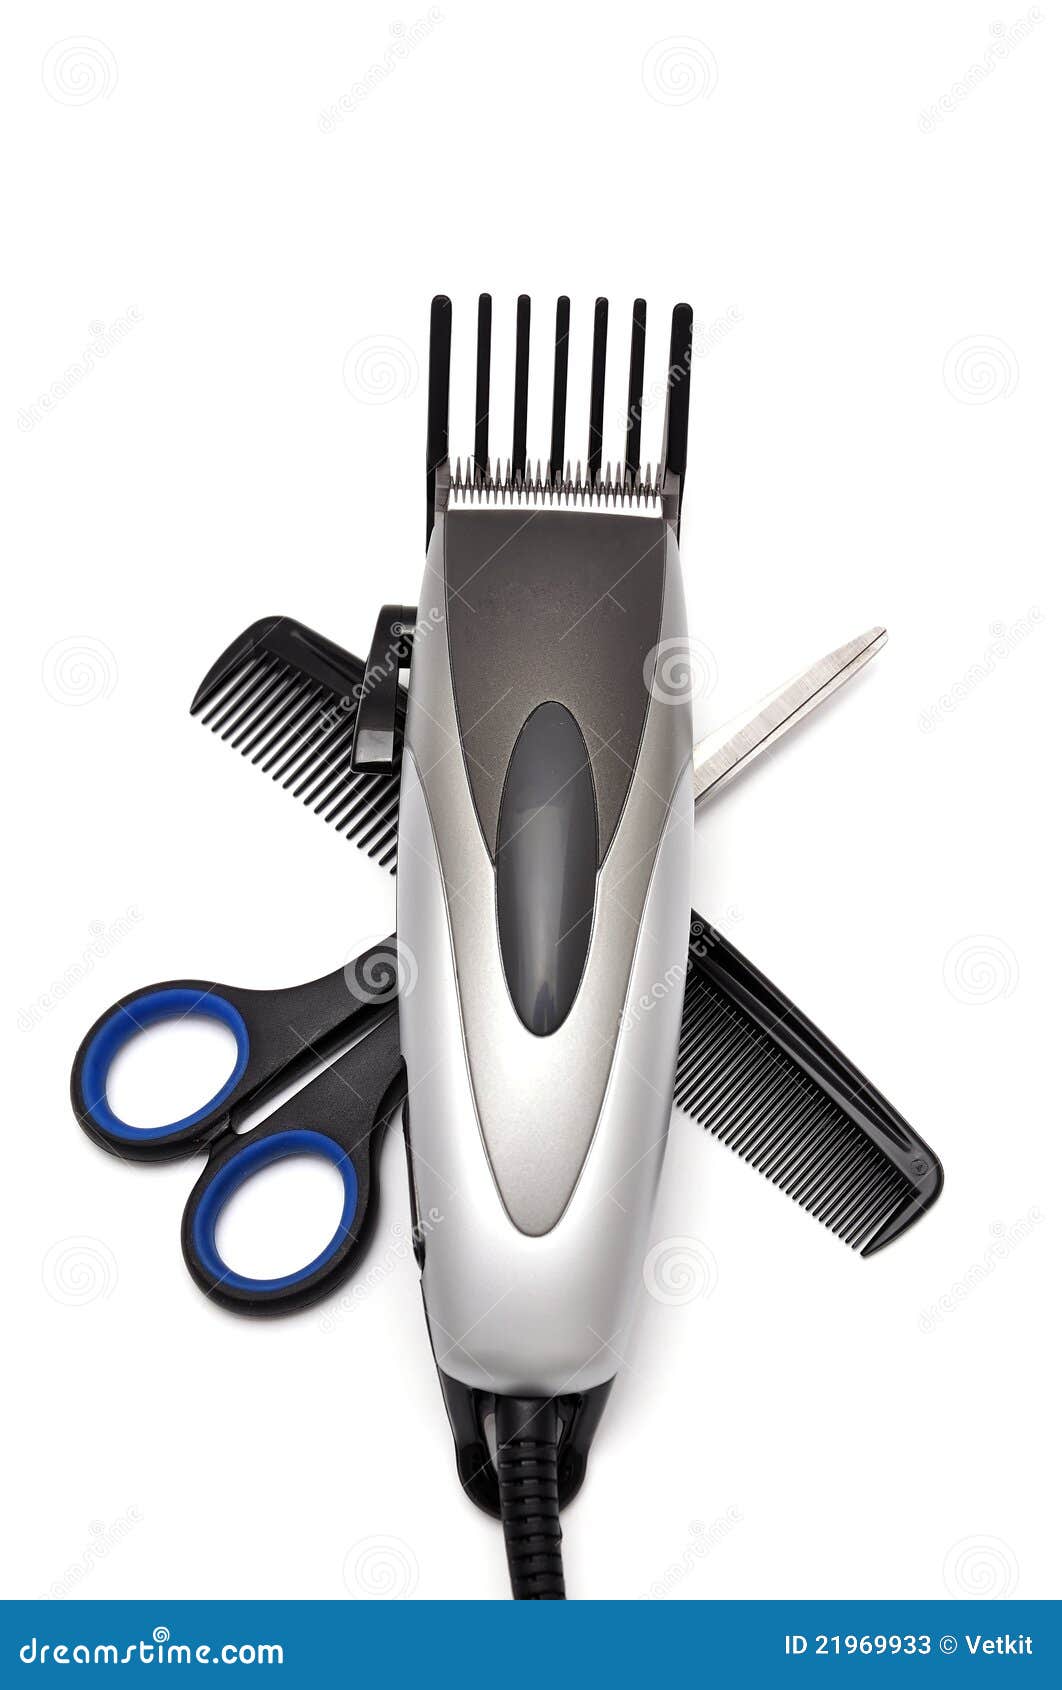 trimmer hair clipper